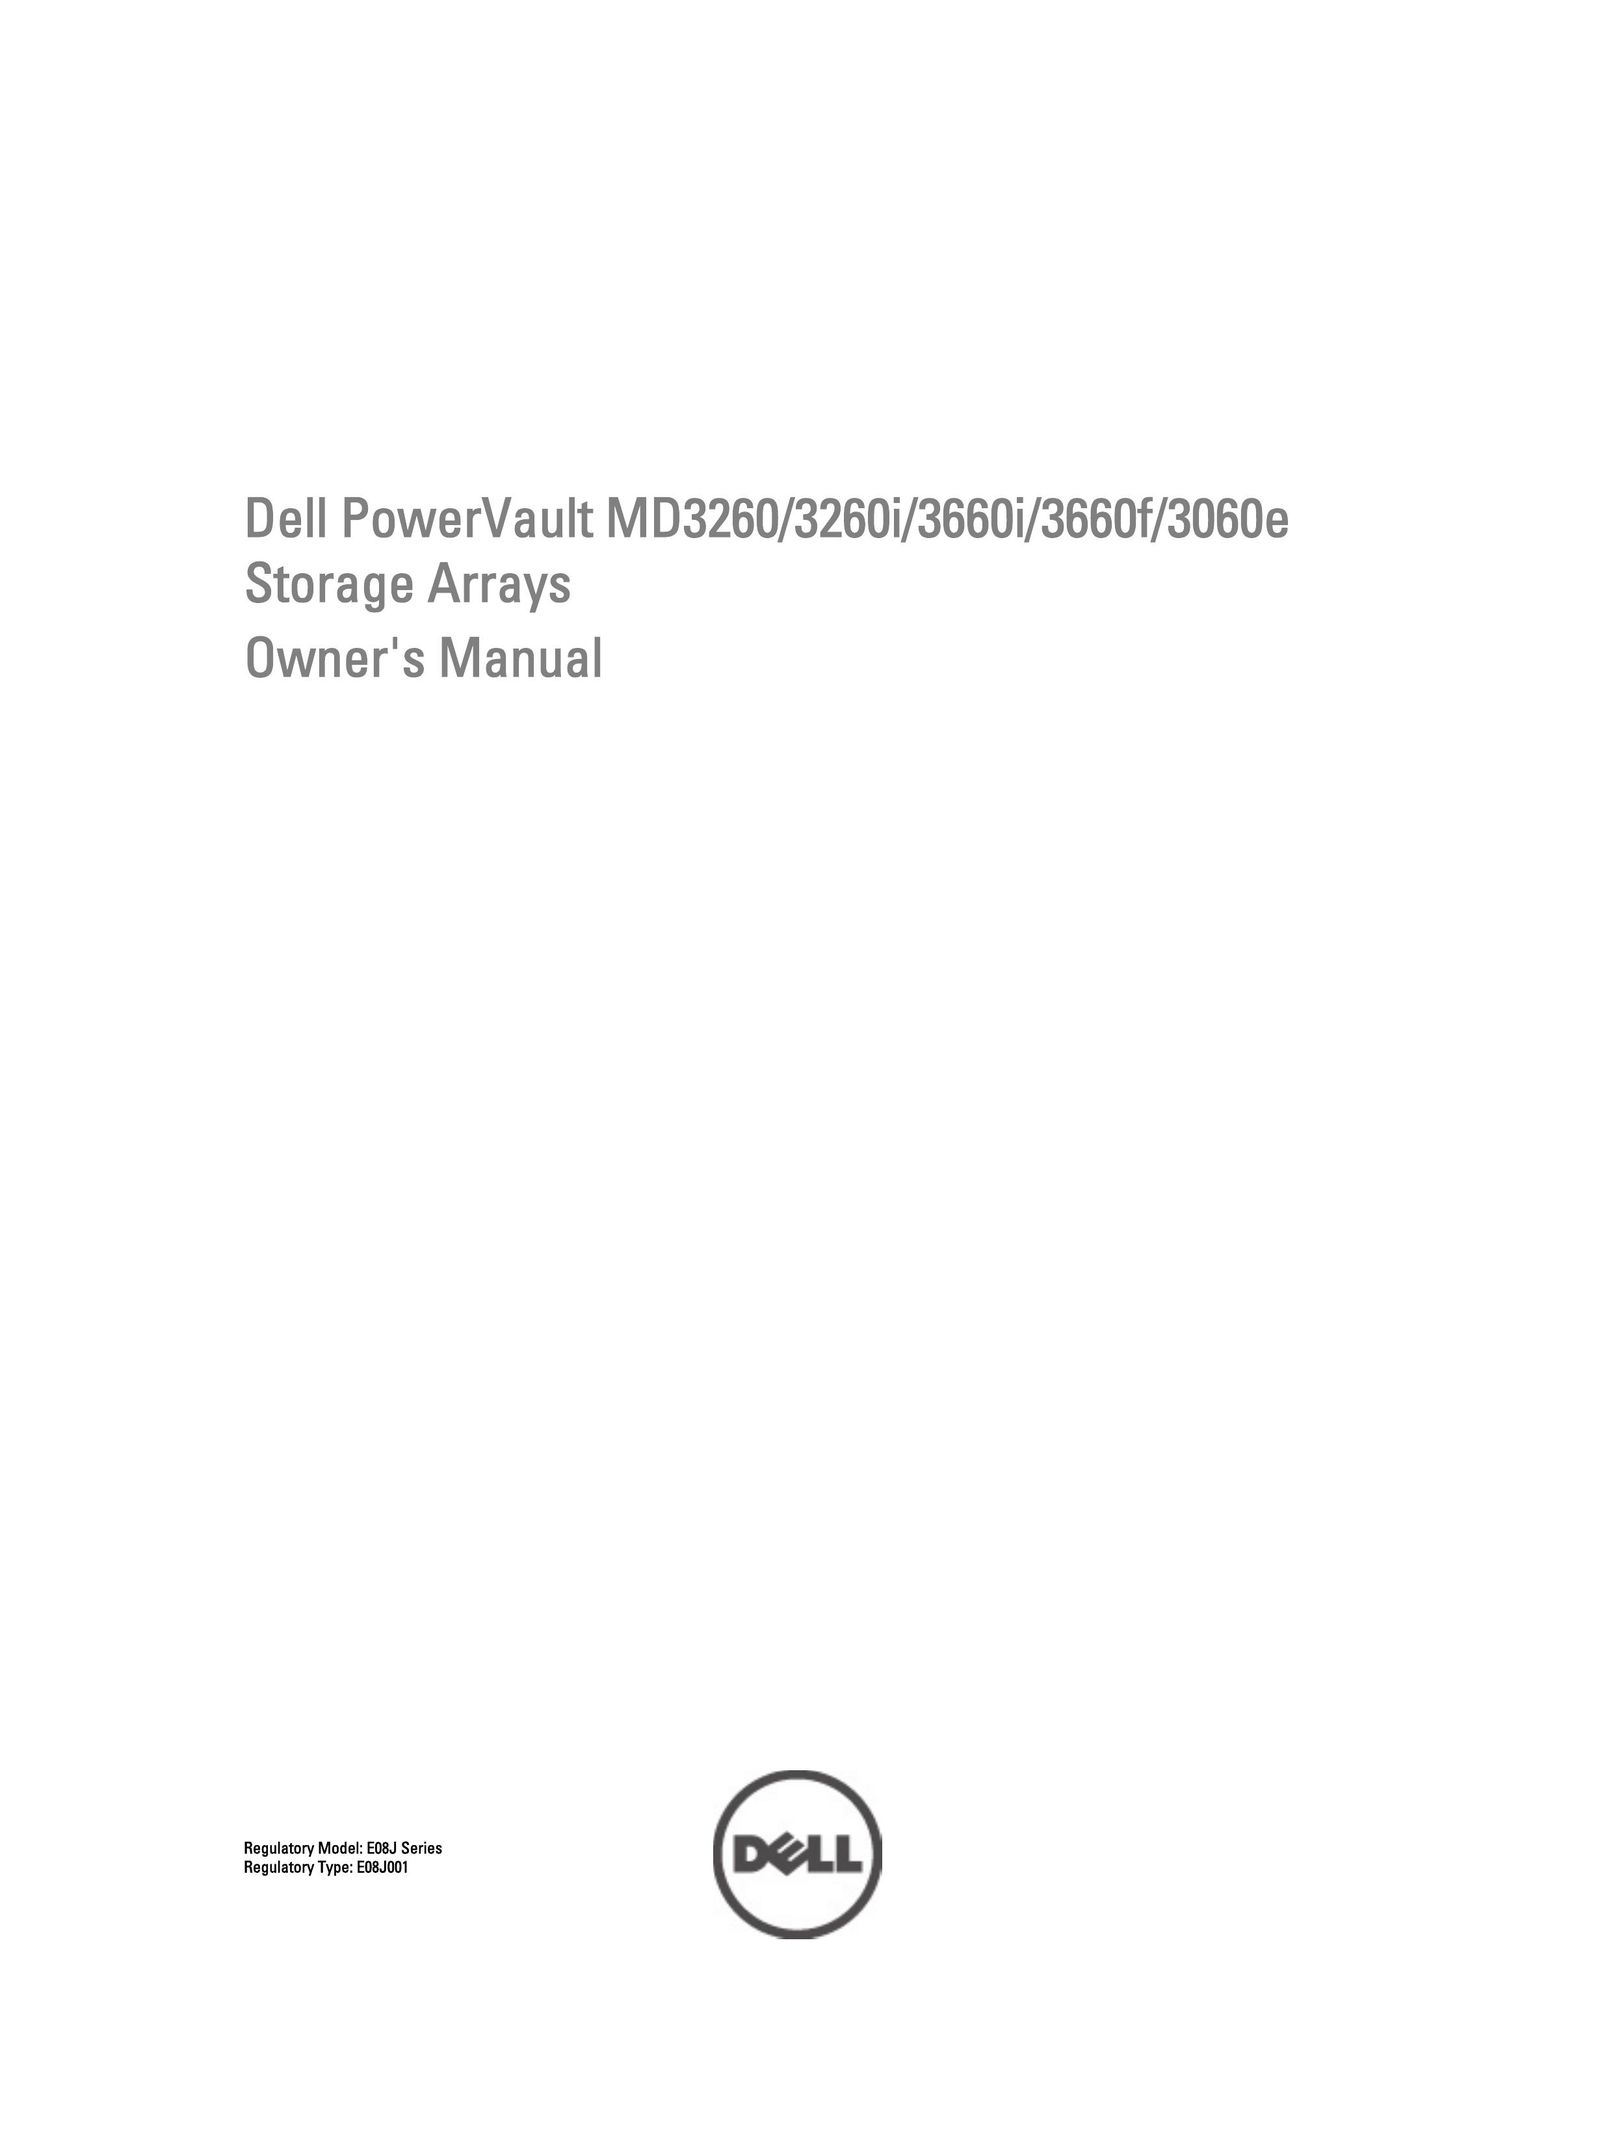 Dell MD3060e Tool Storage User Manual